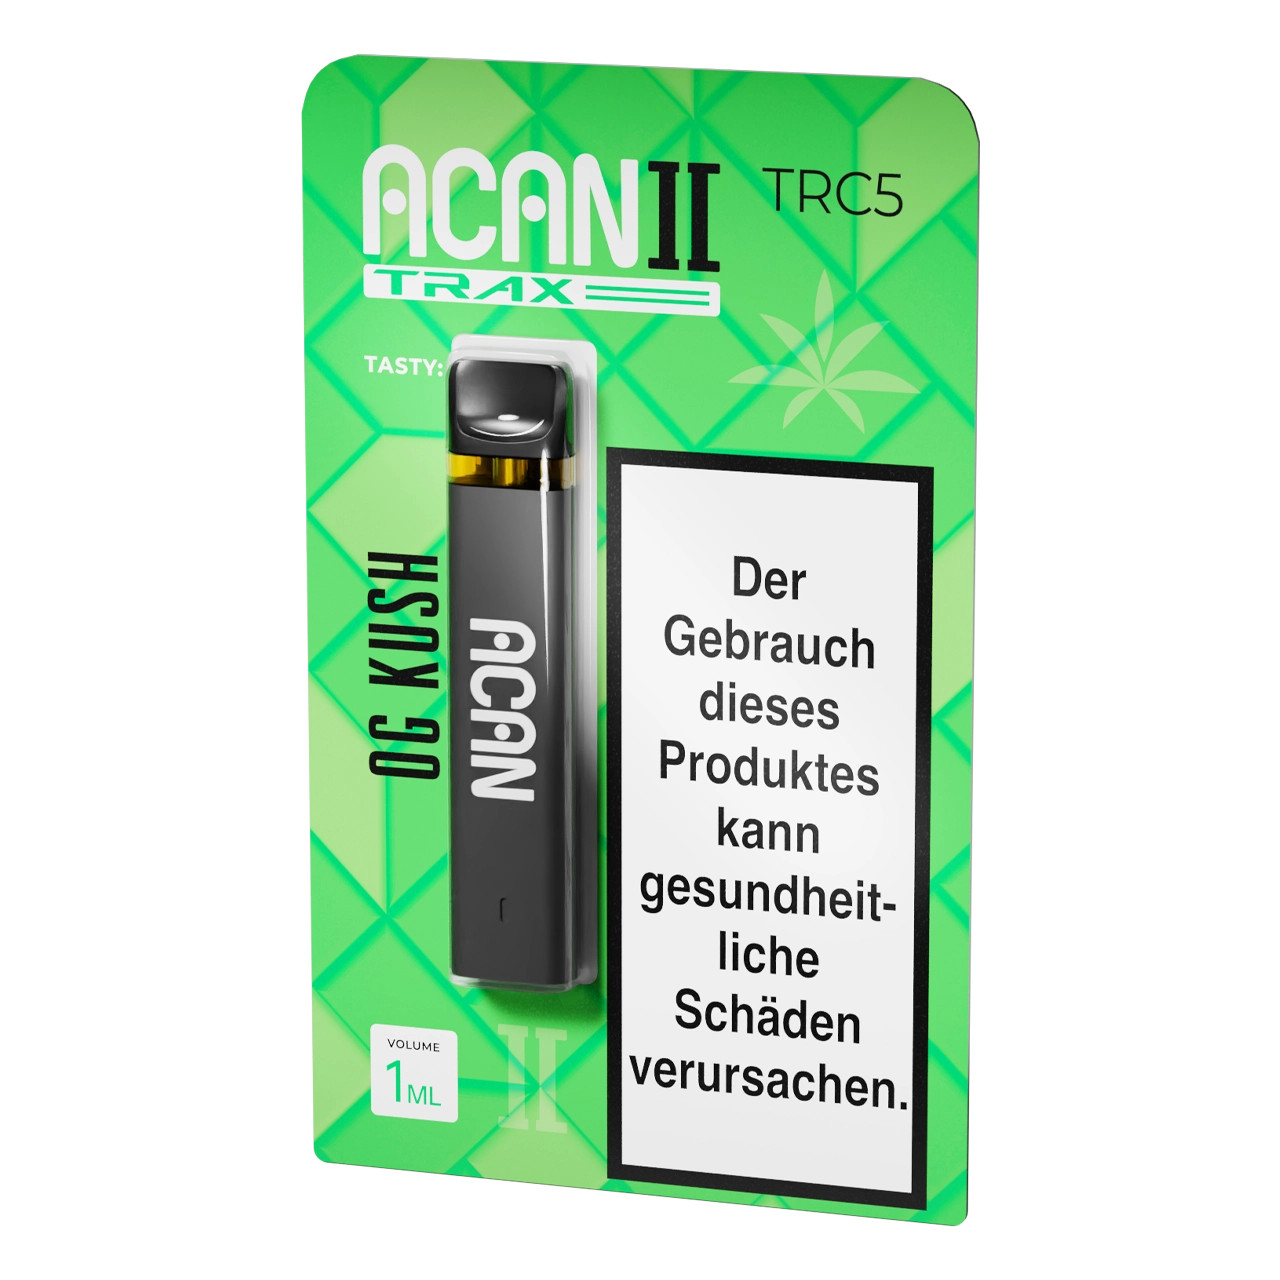 Acan Trax TRC5 Vape Einweg E-Zigarette OG Kush - 1ml